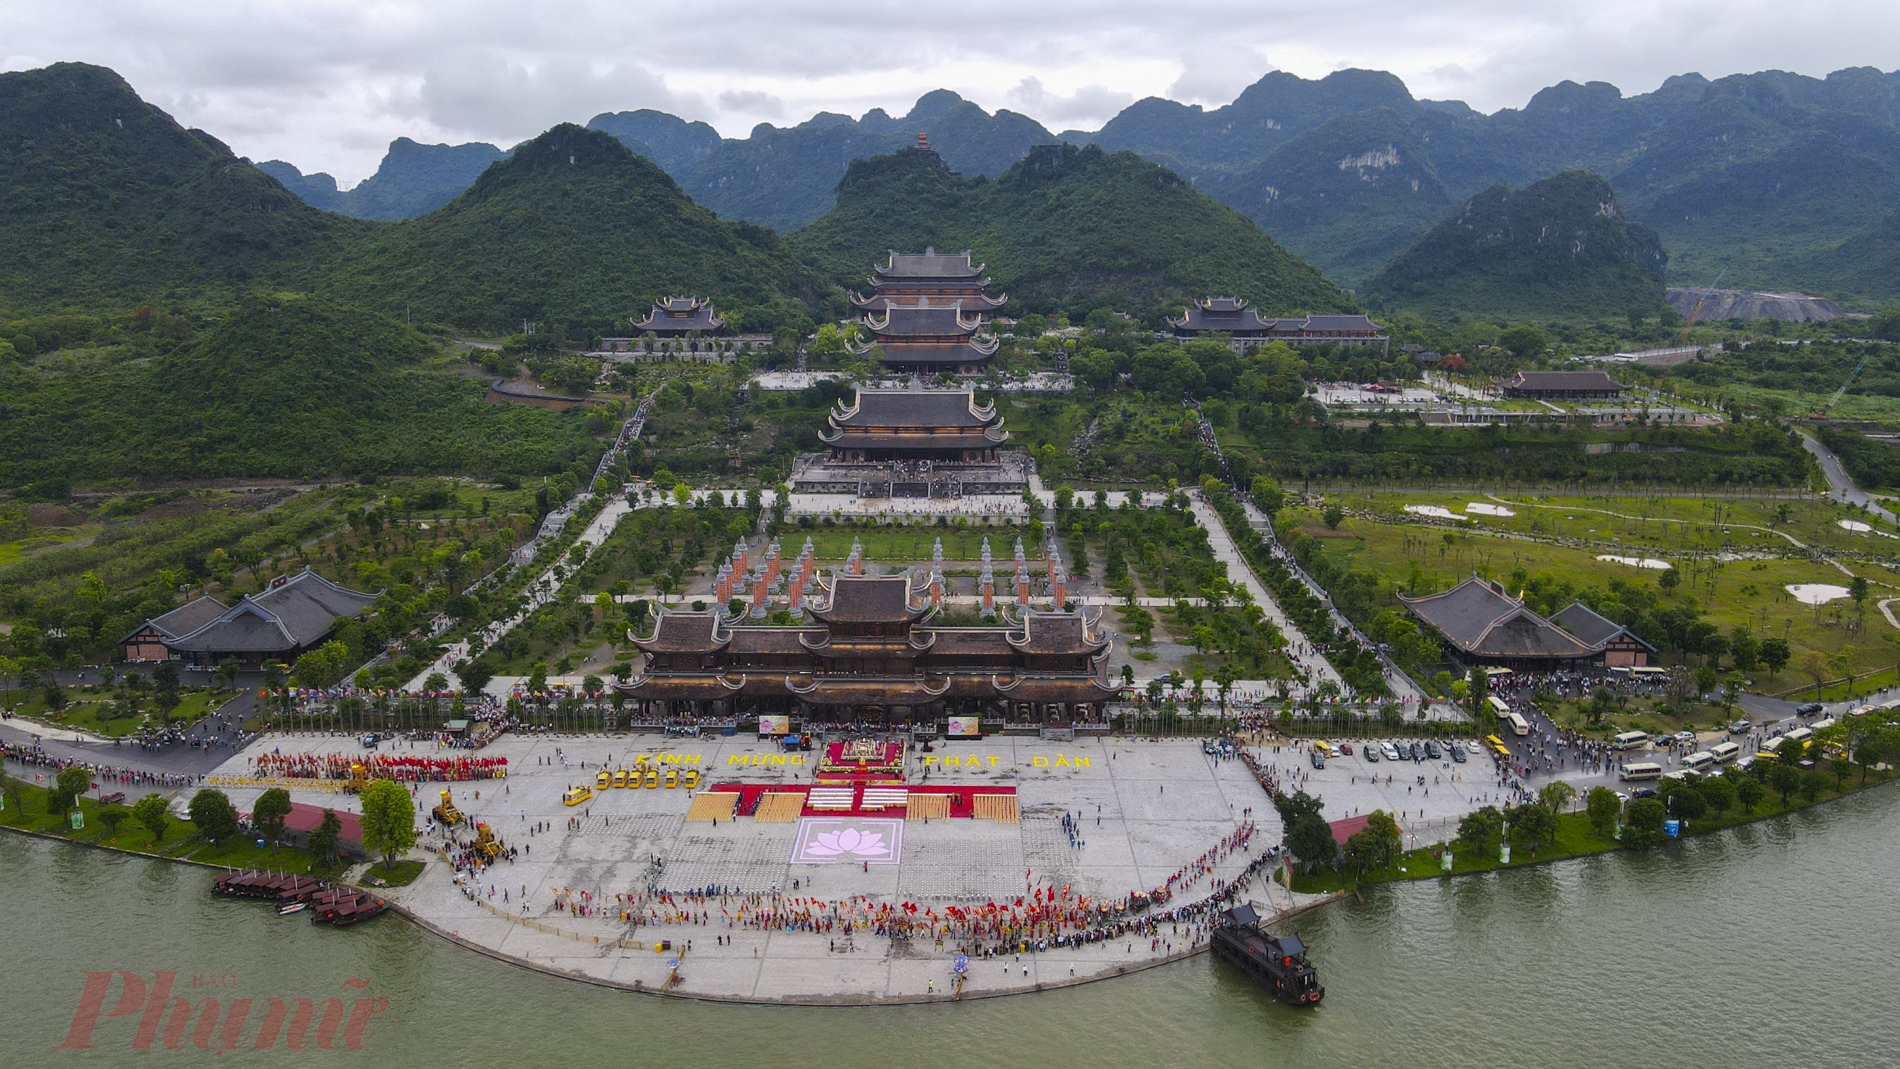 Đại lễ Phật đản năm nay sẽ được tổ chức tại Tam Quan Nội, với một không gian rộng lớn, nhìn ra hồ Tam Chúc…